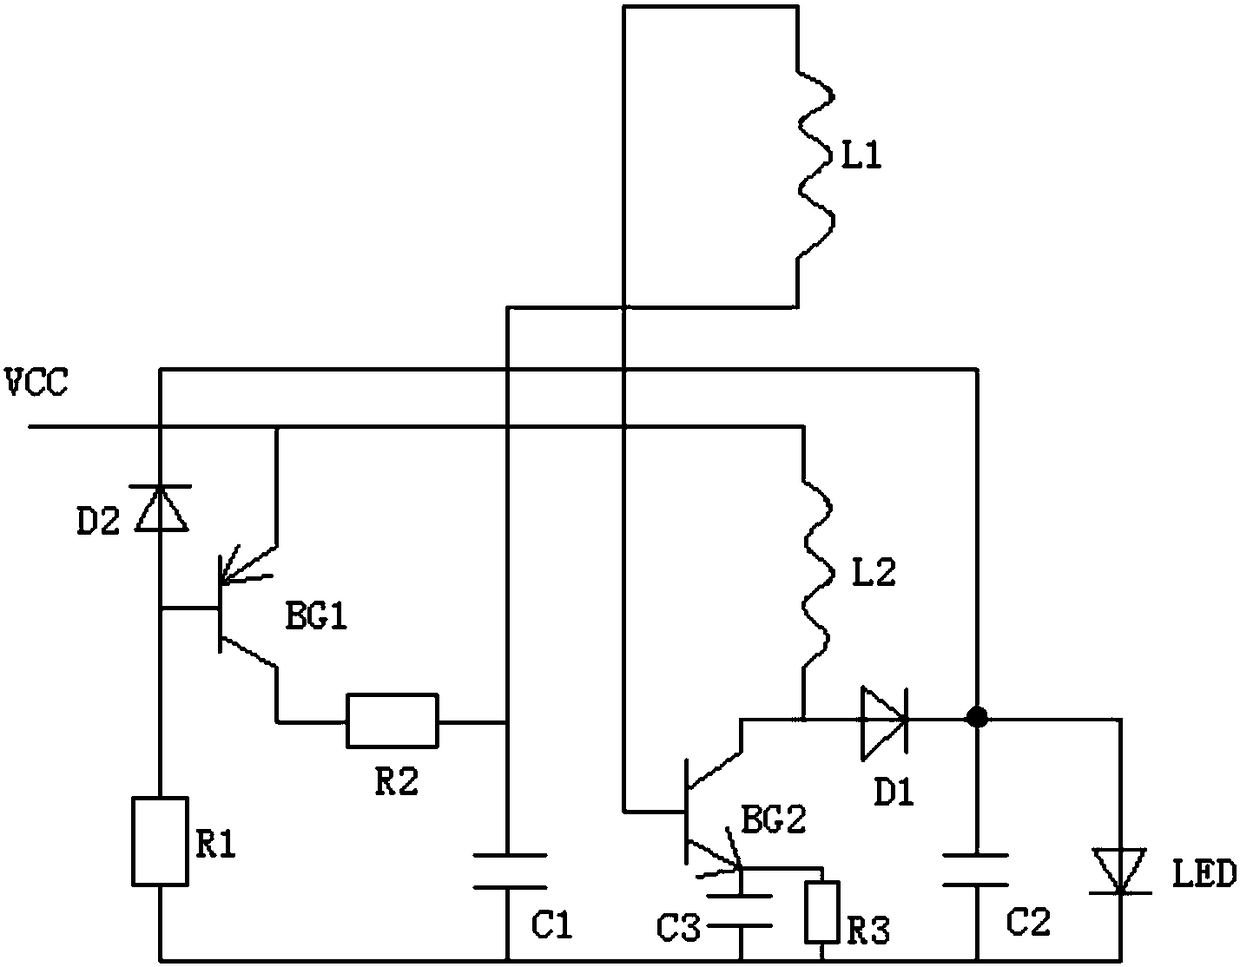 A constant voltage led drive circuit